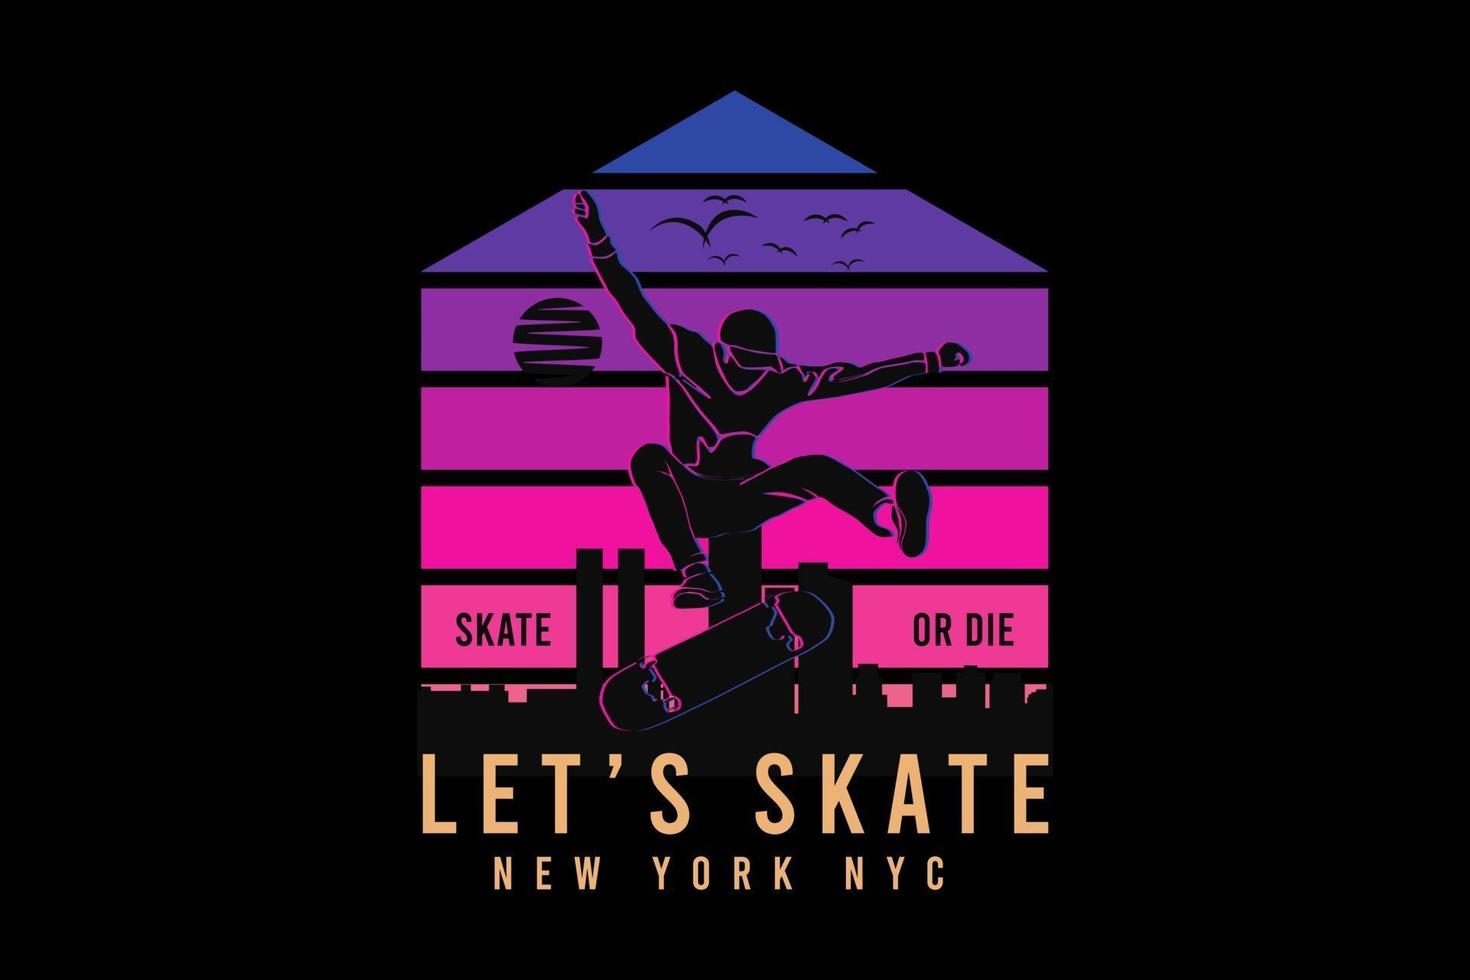 Let's skate new york new york city,t design silhouette retro style vector